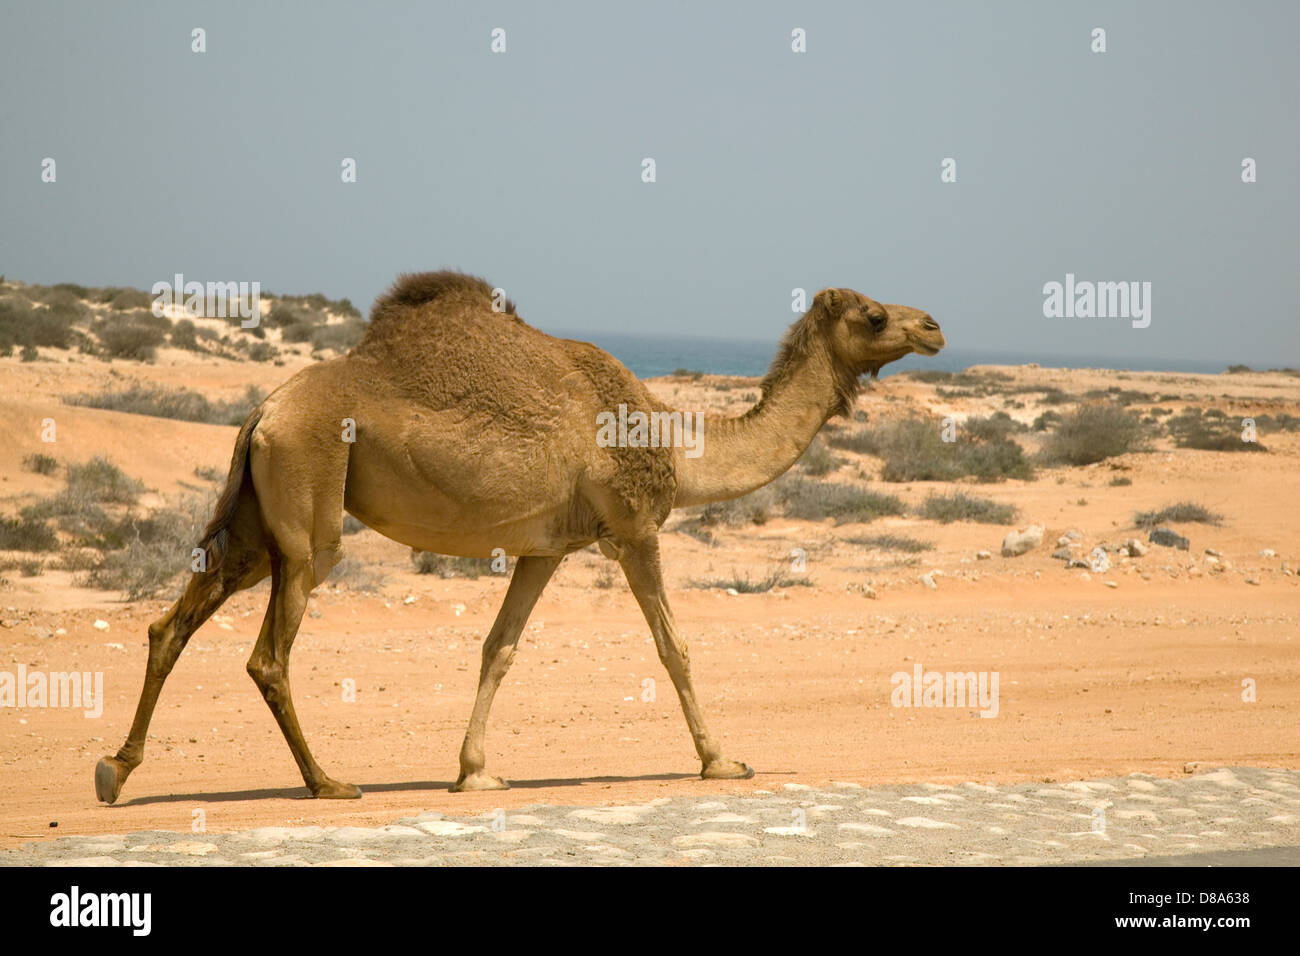 Salalah oman desert hi-res stock photography and images - Alamy